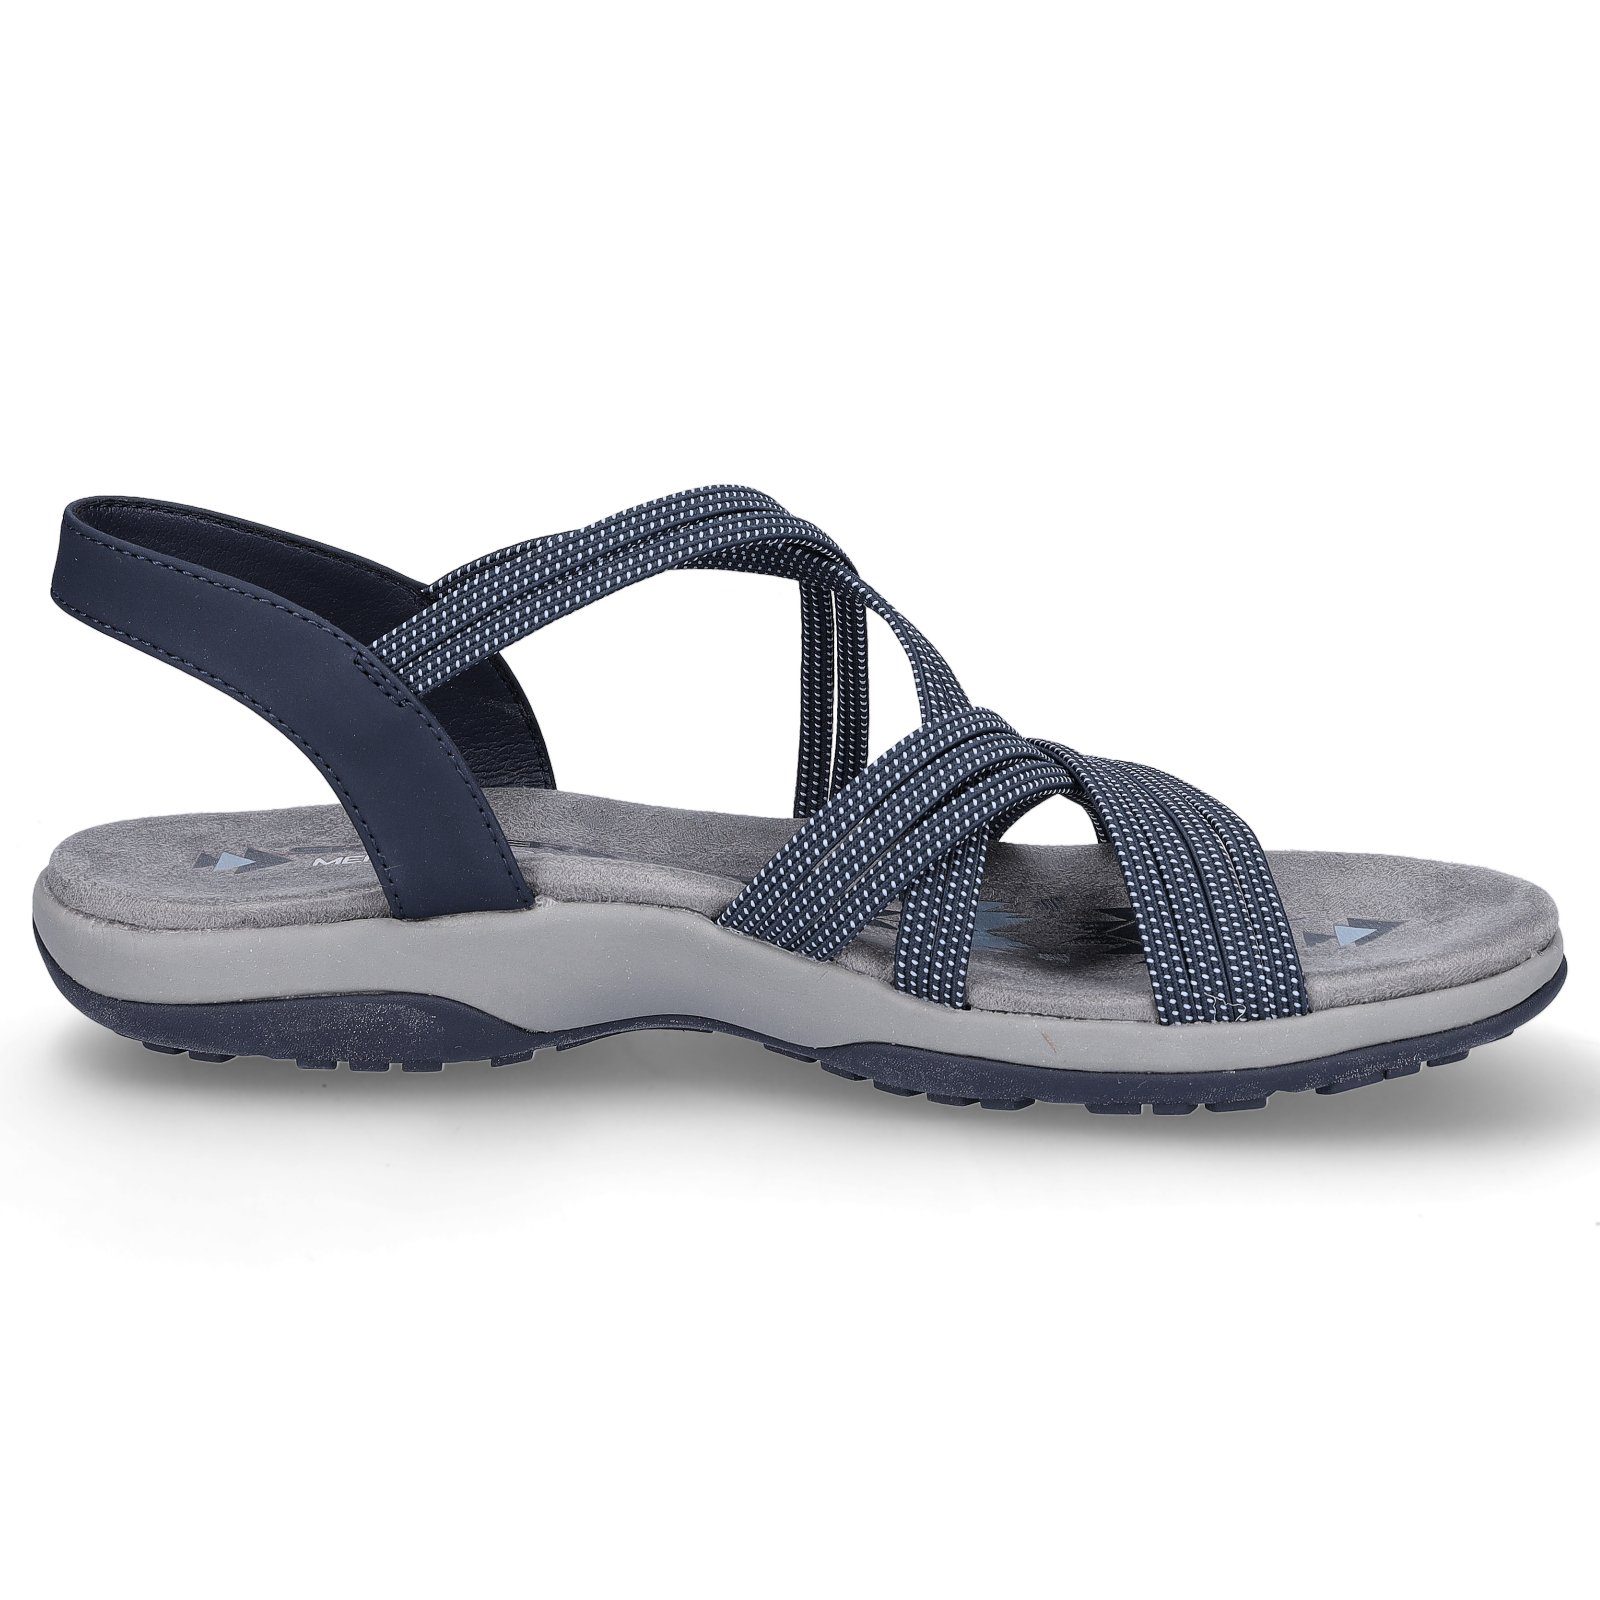 Sandale Reggae Skechers Skechers marine Sandale Damen Slim (20202745) blau Blau